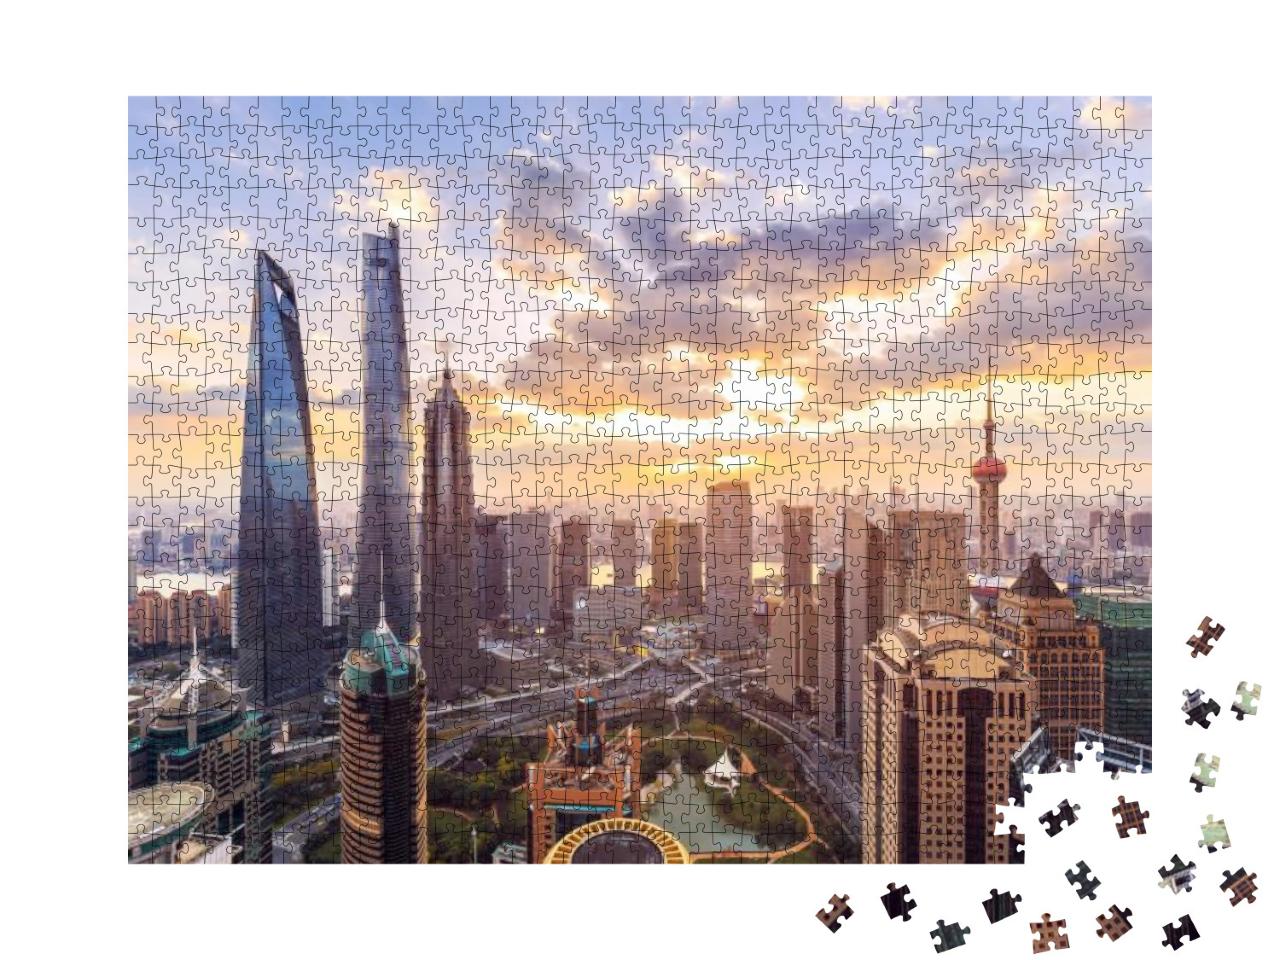 Puzzle 1000 Teile „Skyline und Stadtbild von Shanghai im Sonnenuntergang“